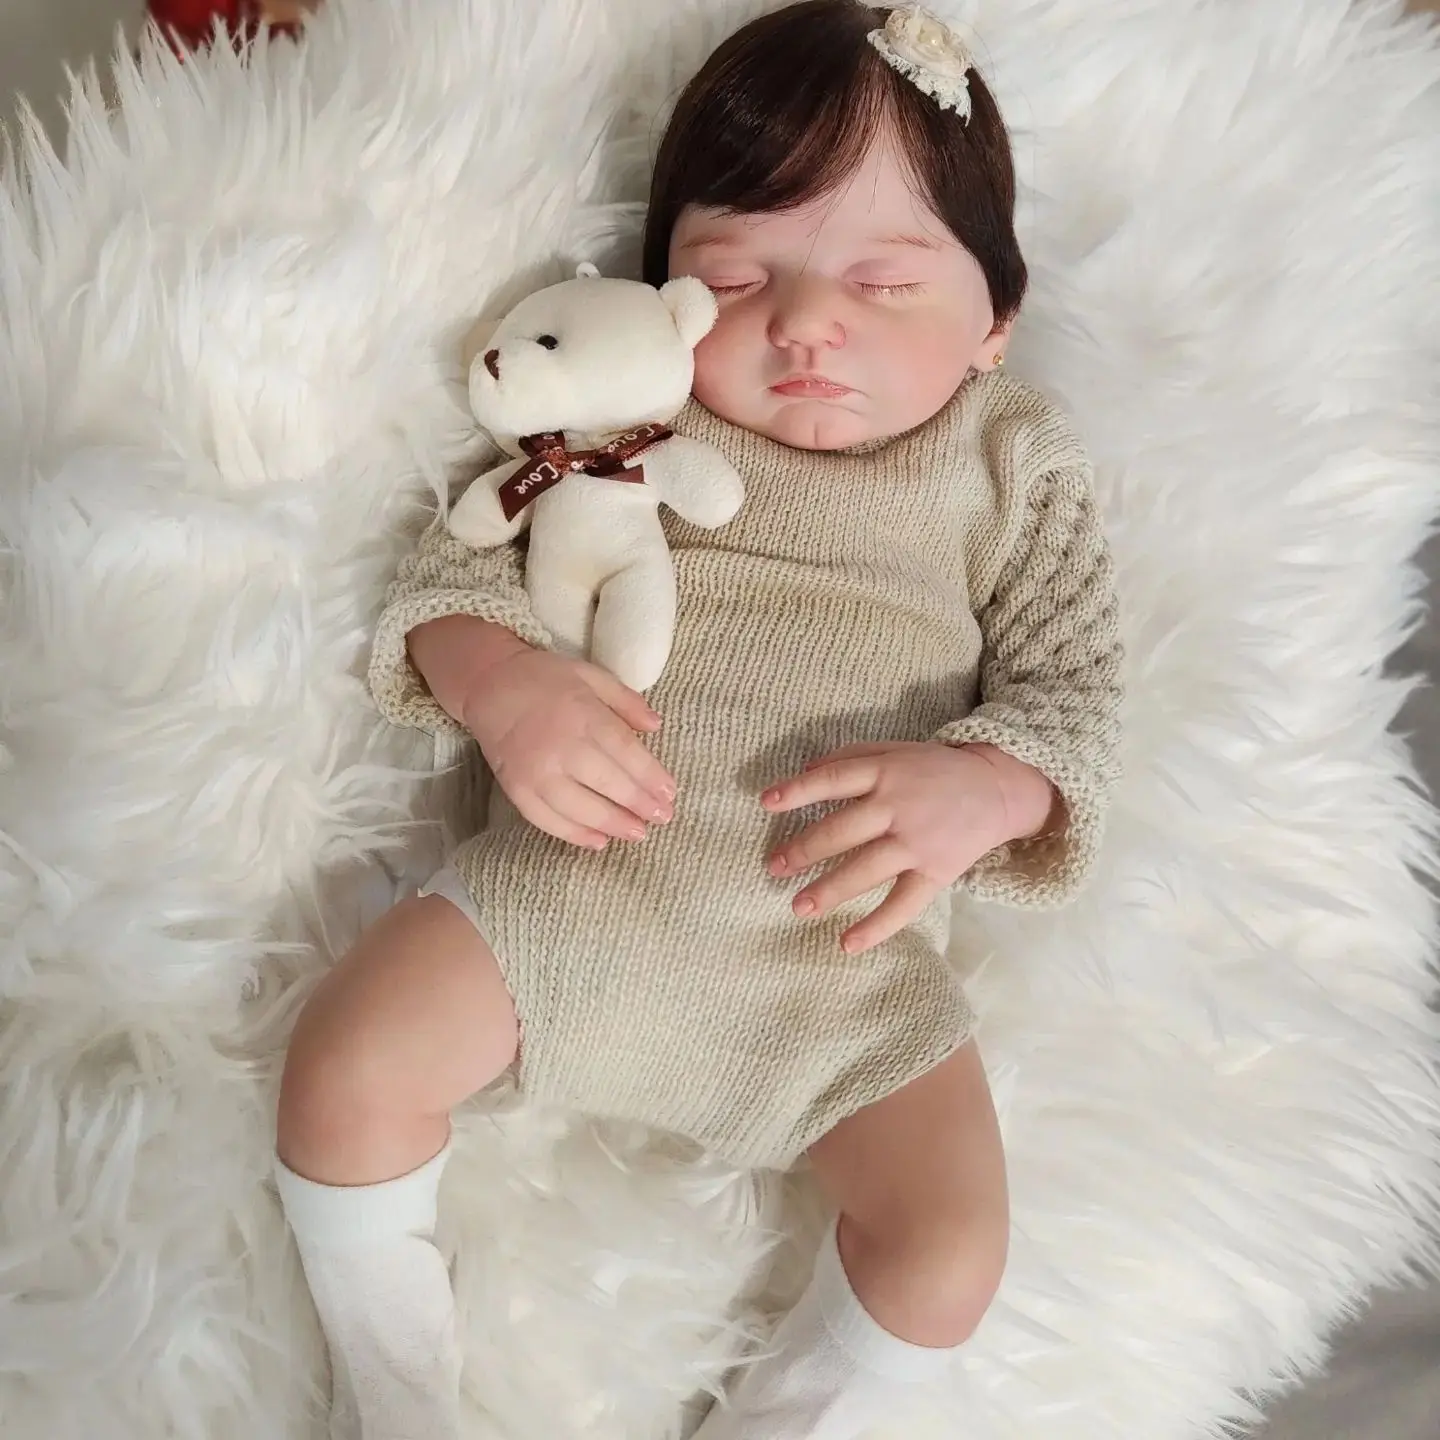 50 см Уже окрашенная Готовая кукла Bebe Reborn, настоящая, живая, спящая, размер новорожденного, реалистичная, мягкая на ощупь 3D-кукла для рисования кожи